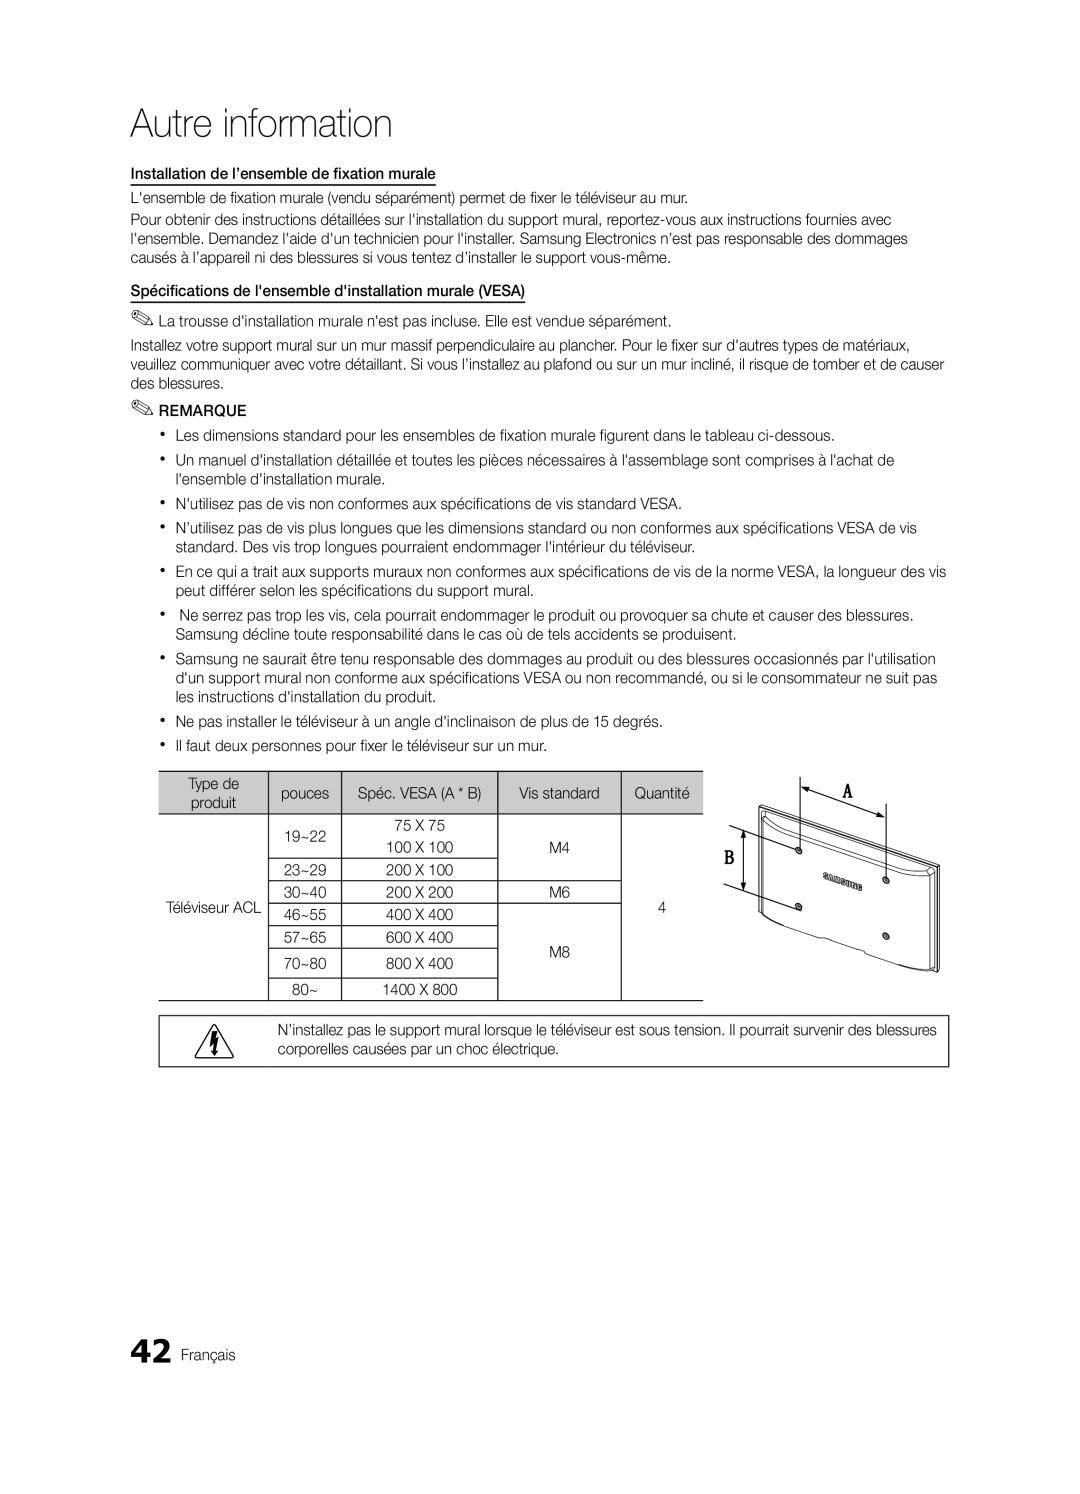 Samsung LN32C550 user manual Autre information, Spéc. VESA A * B 